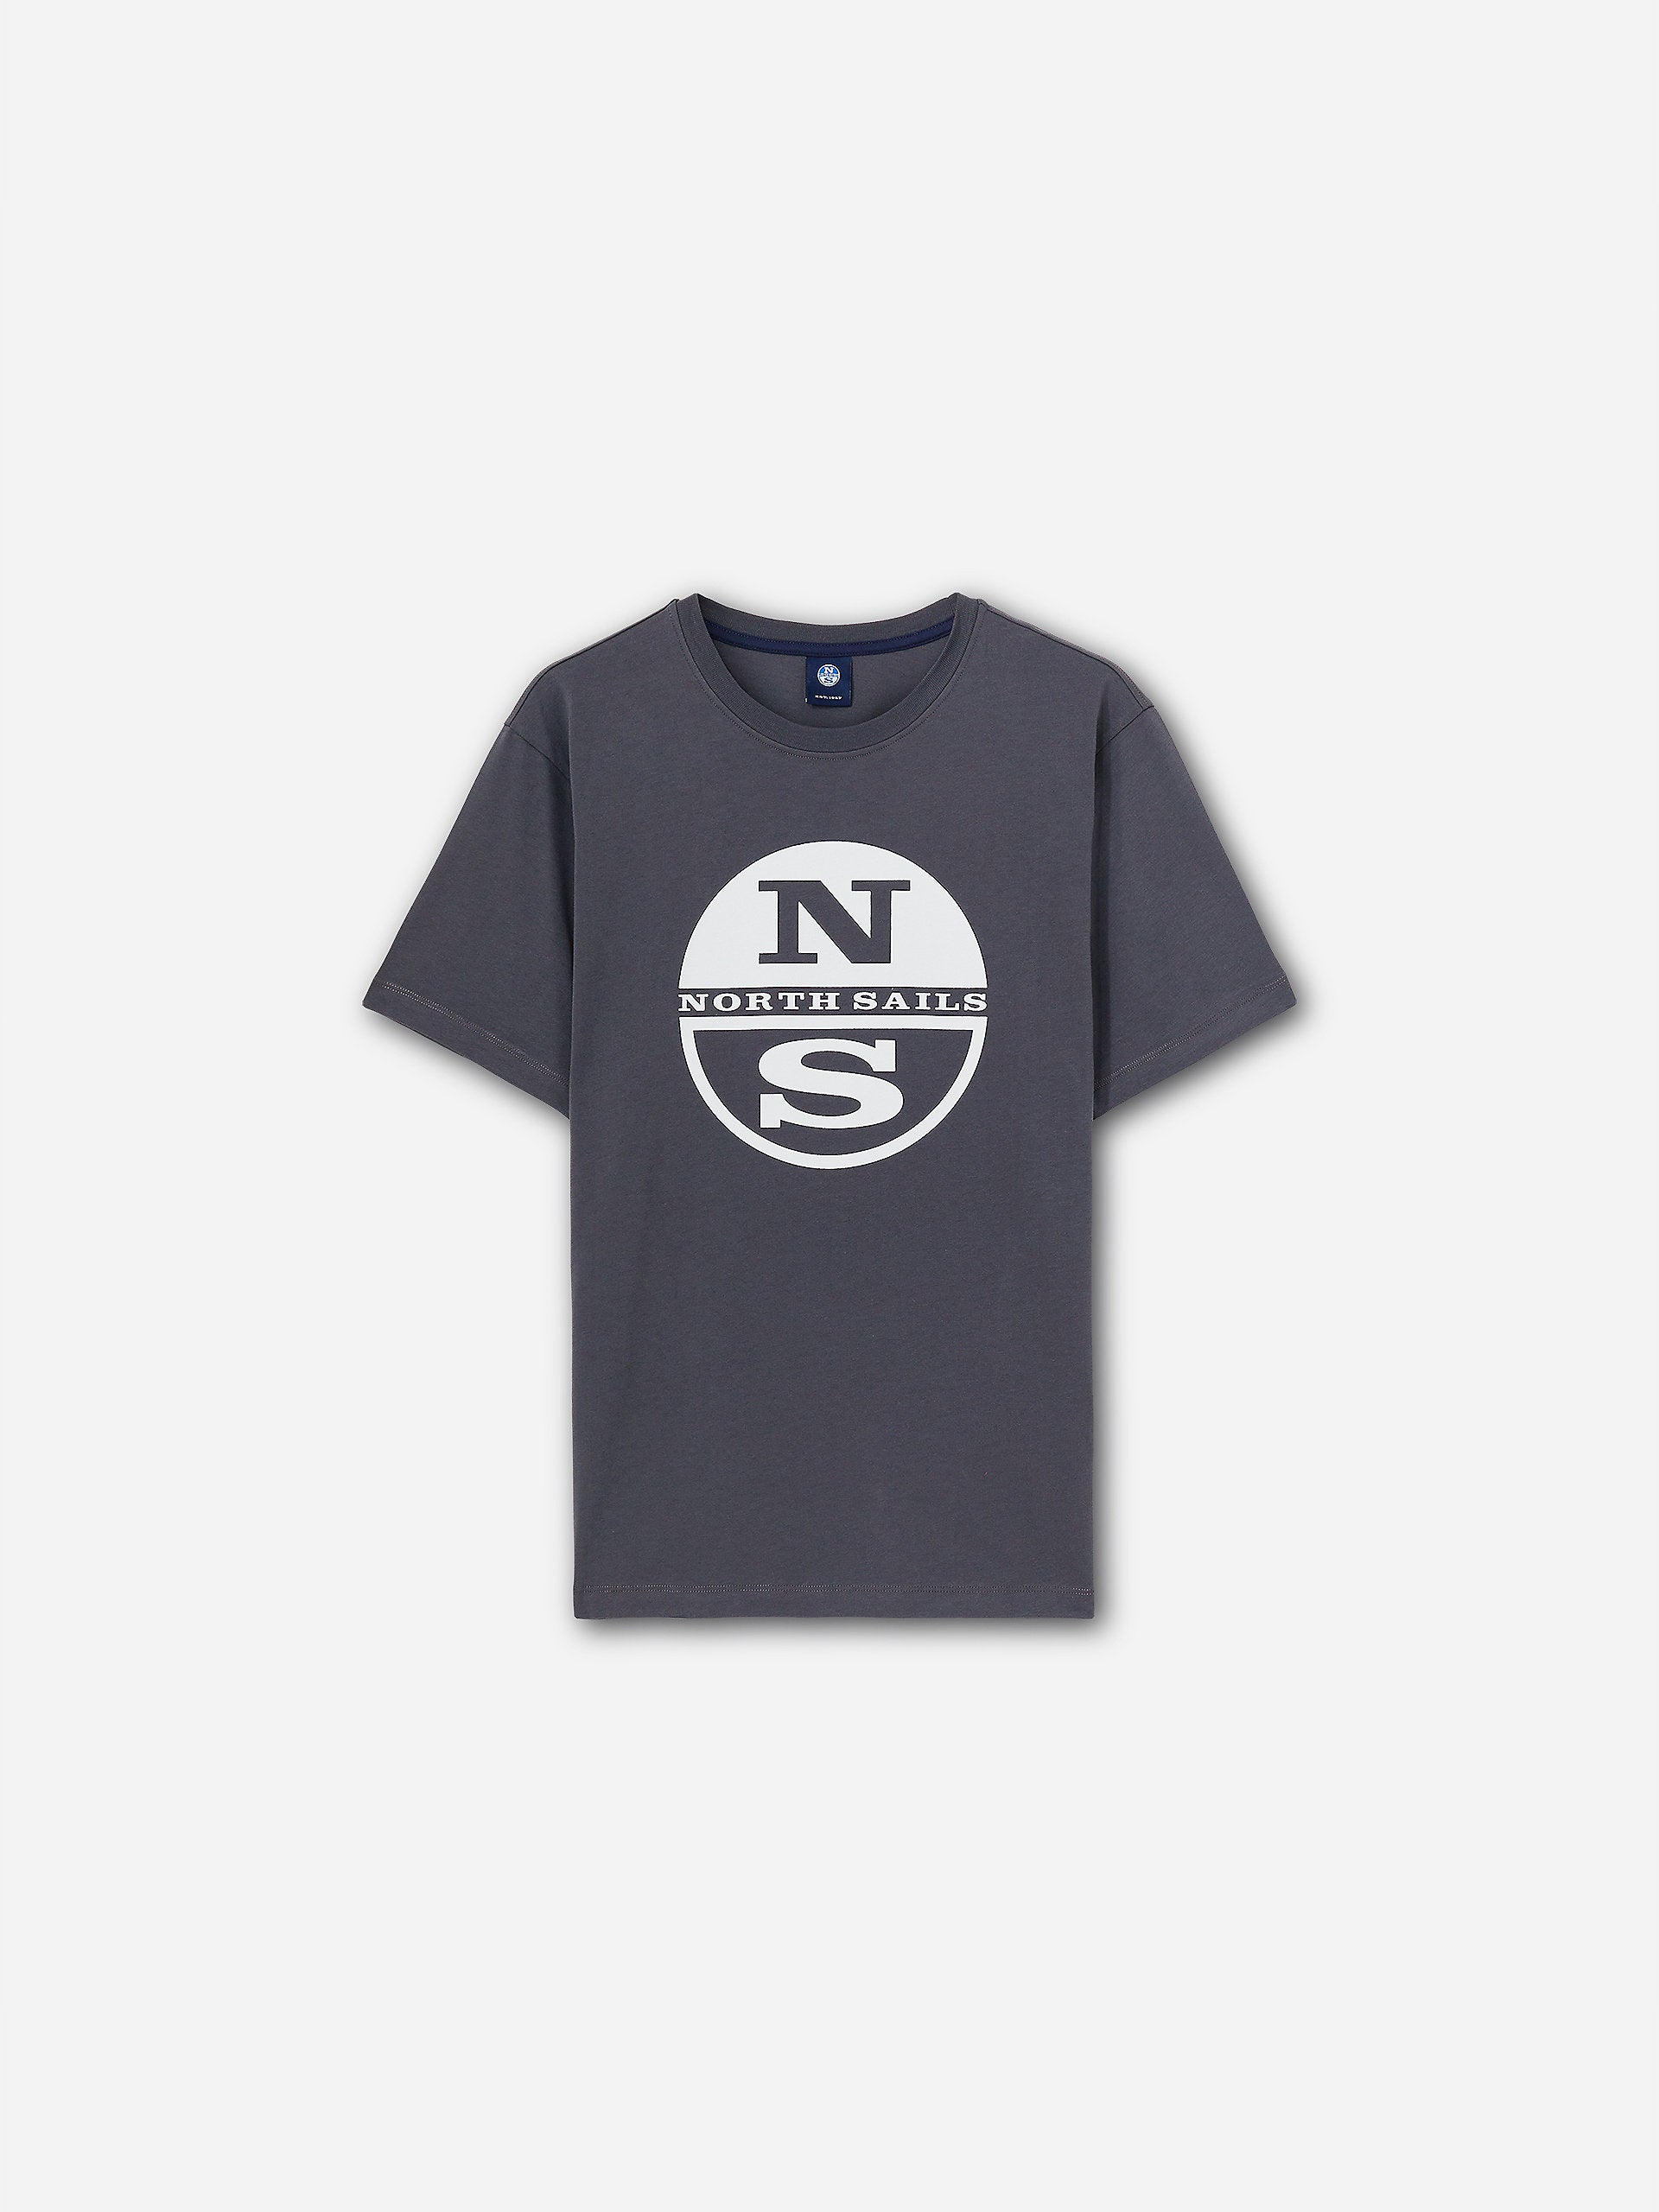 North Sails - T-shirt con maxi logoNorth SailsAsphalt4XL